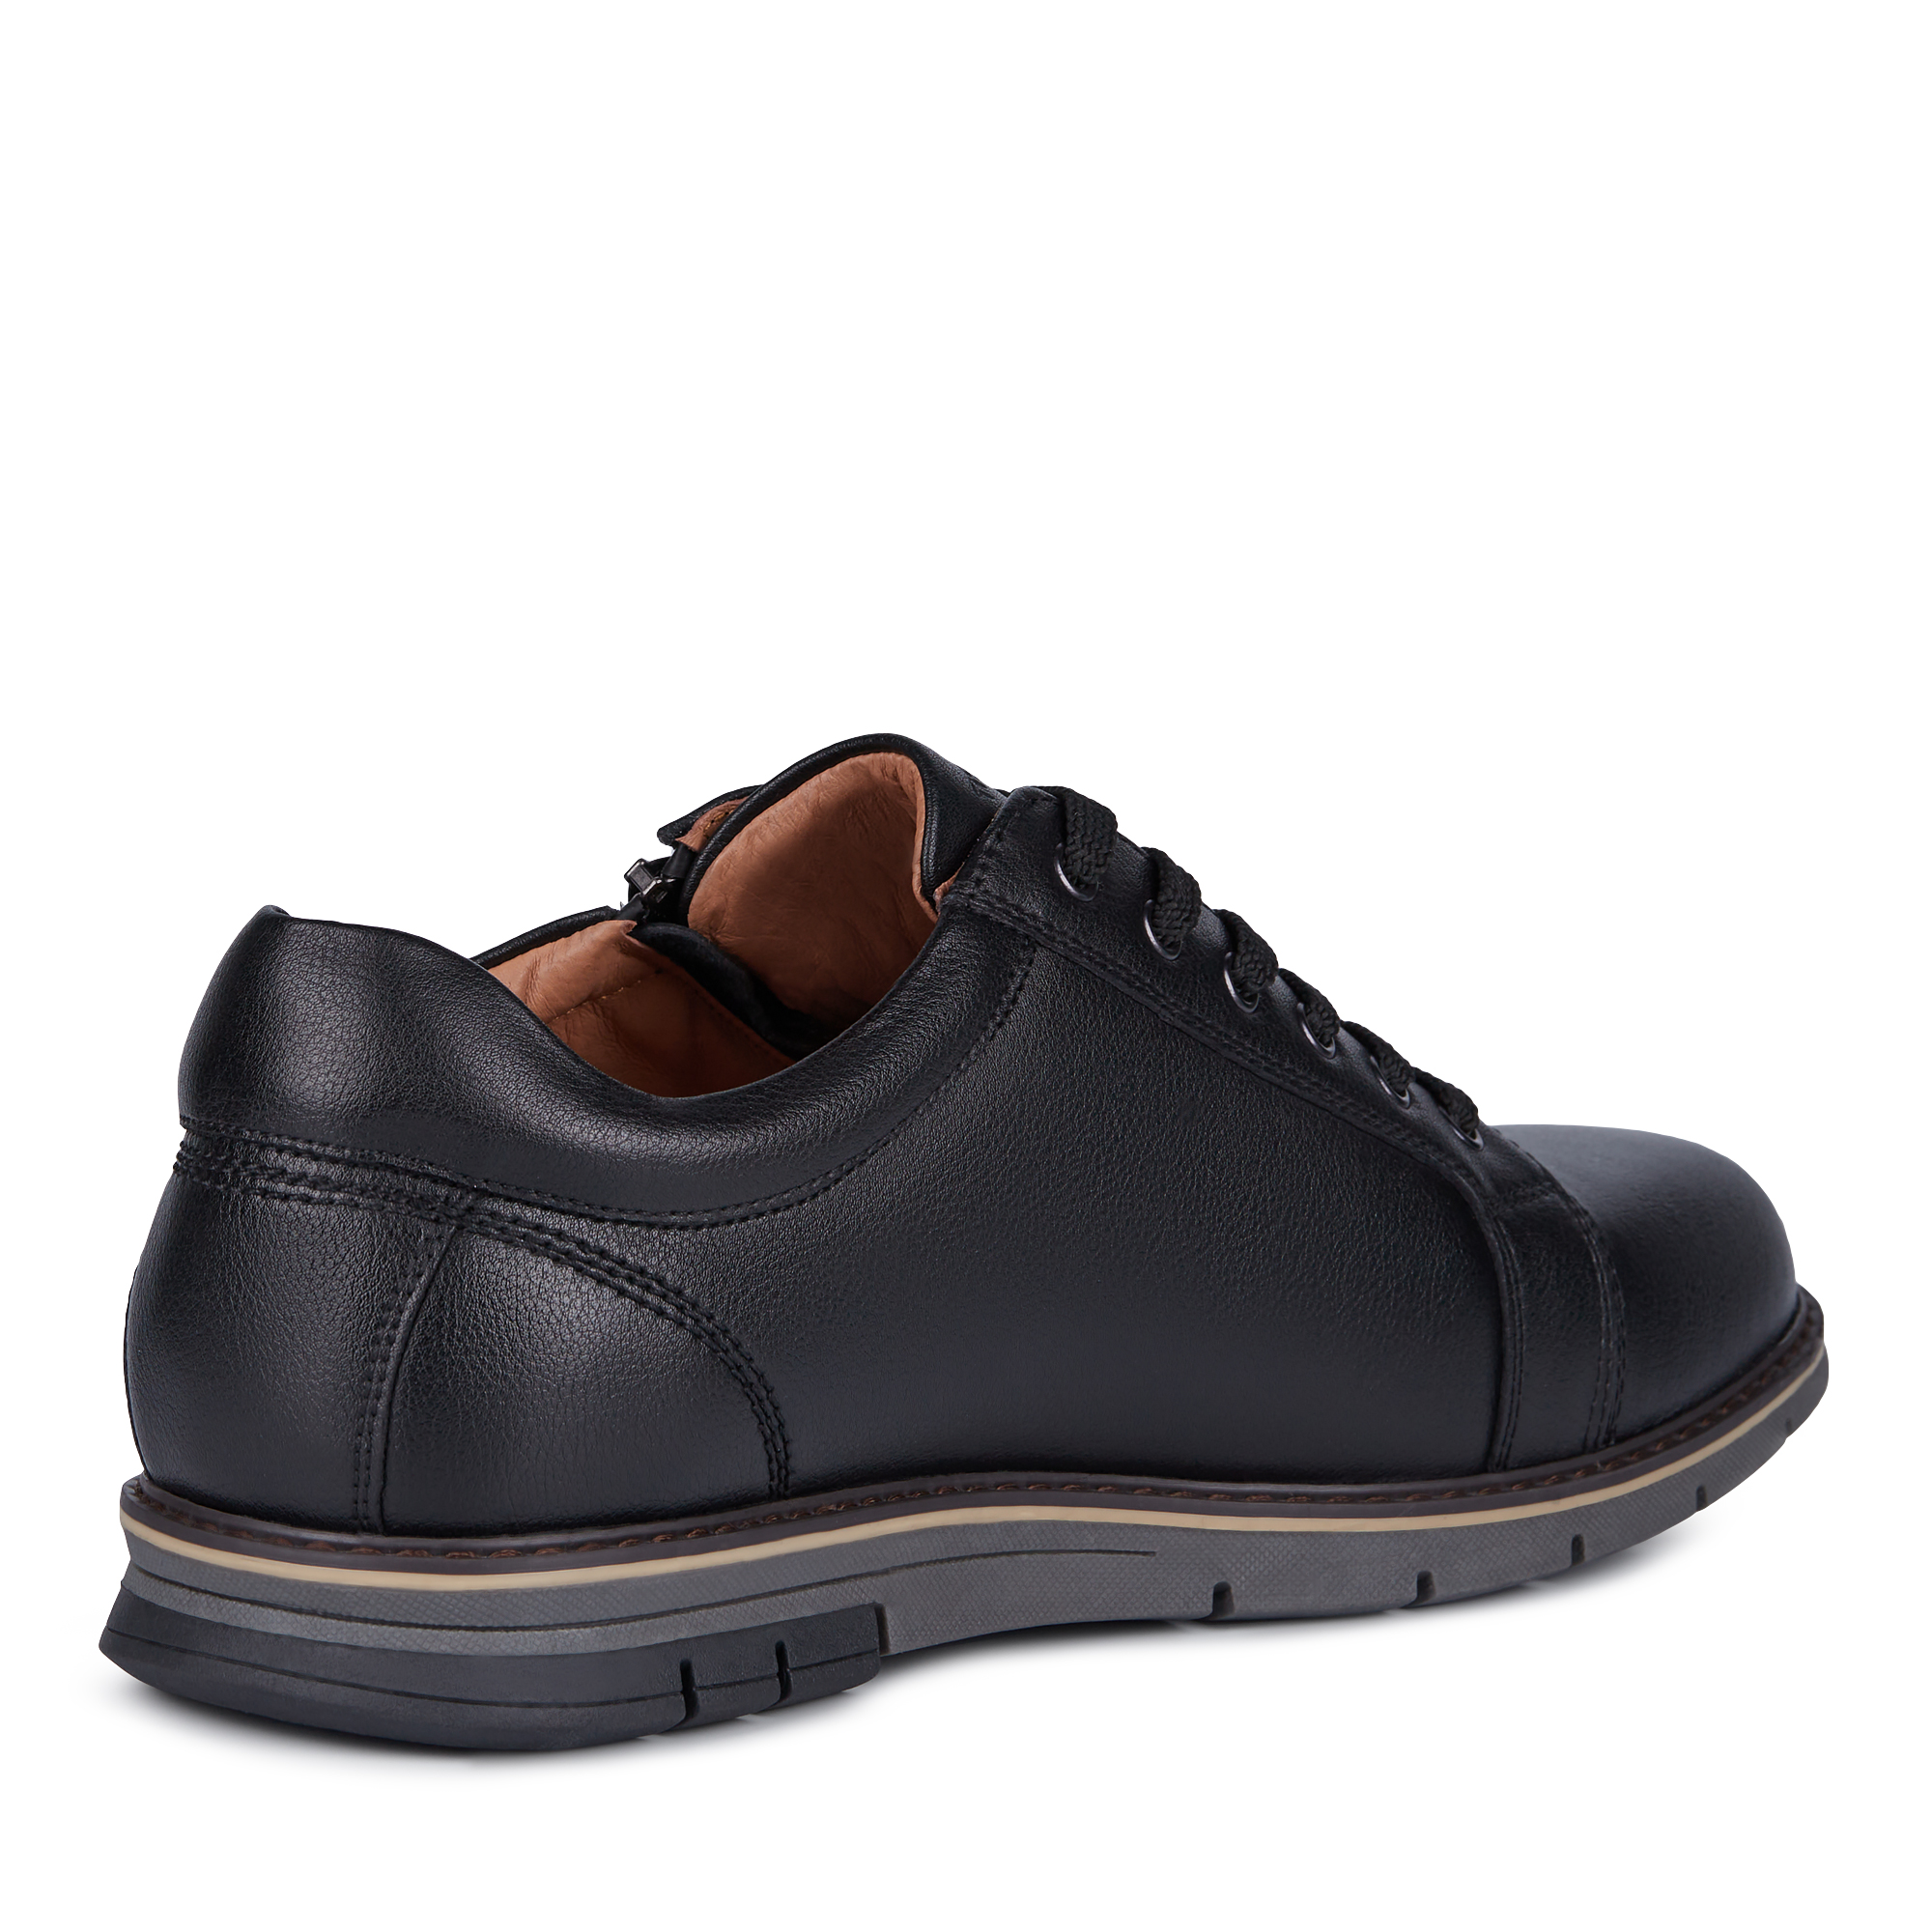 Туфли/полуботинки Thomas Munz 058-909A-1602, цвет черный, размер 40 - фото 3